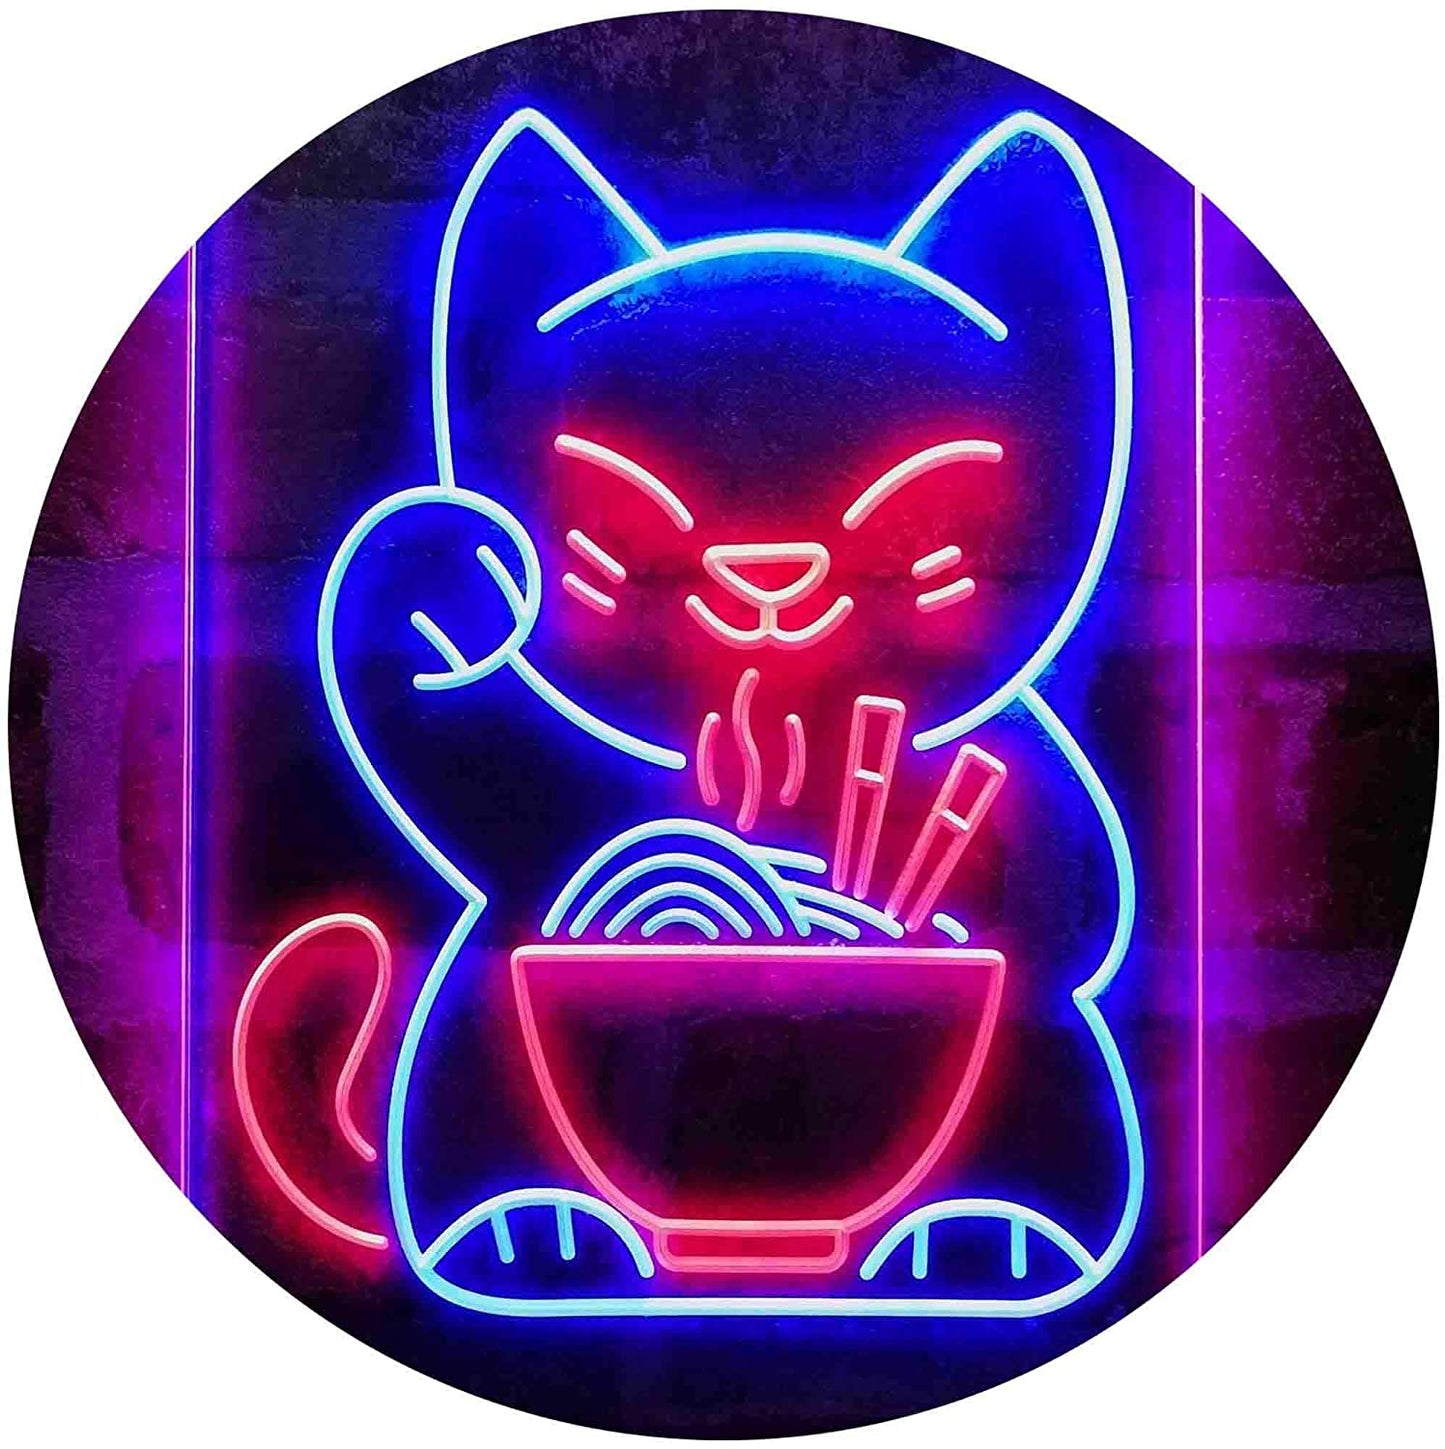 Maneki Neko Ramen Luck Cat LED Neon Light Sign - Way Up Gifts